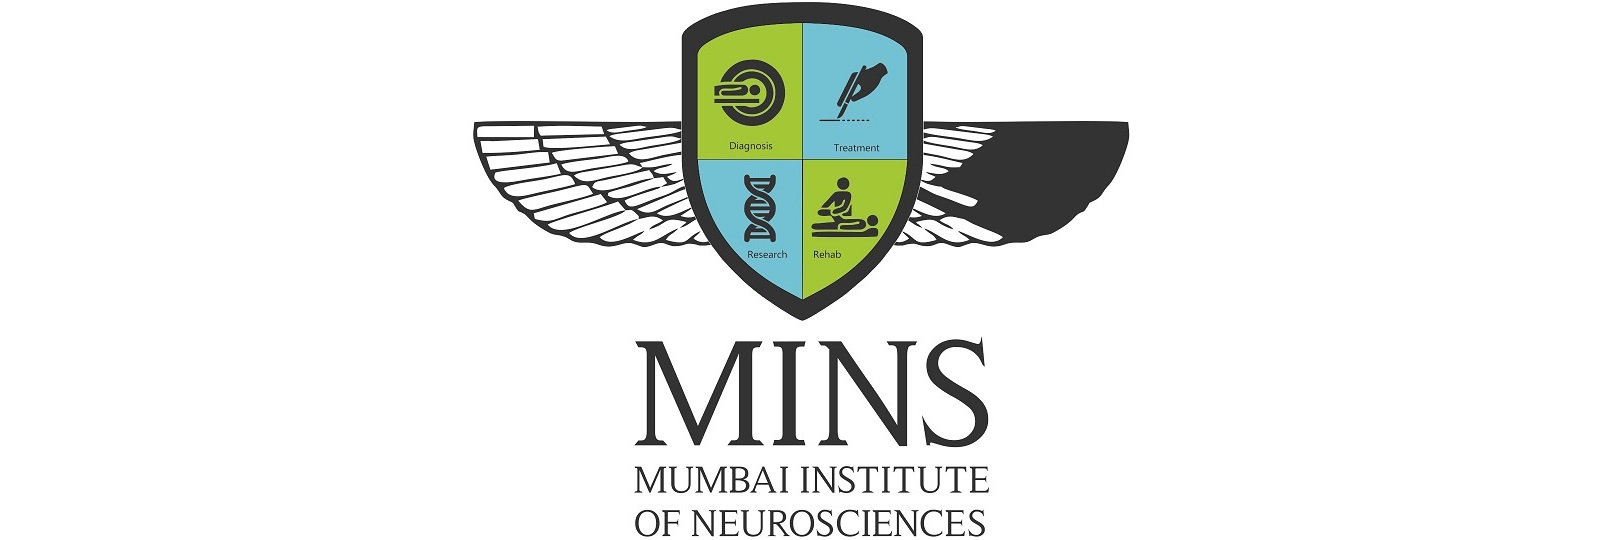 Mumbai Institute of Neurosciences